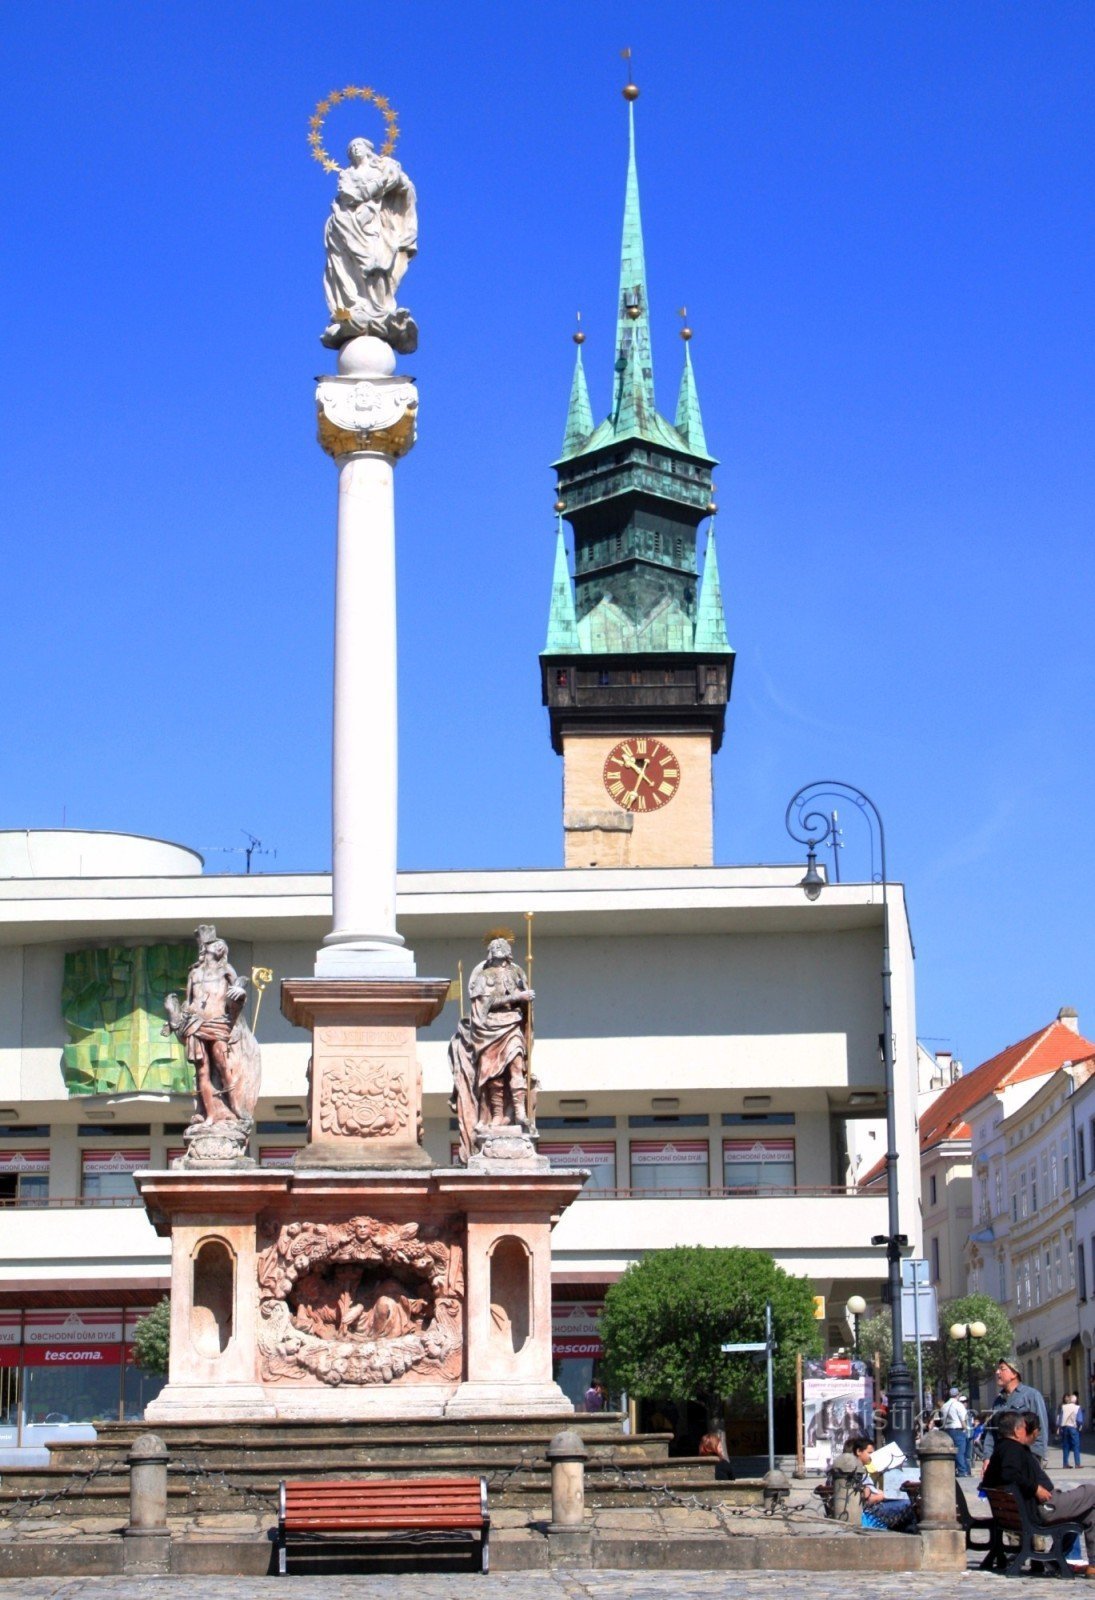 ズノイモ - 旧市庁舎の塔のあるペスト柱